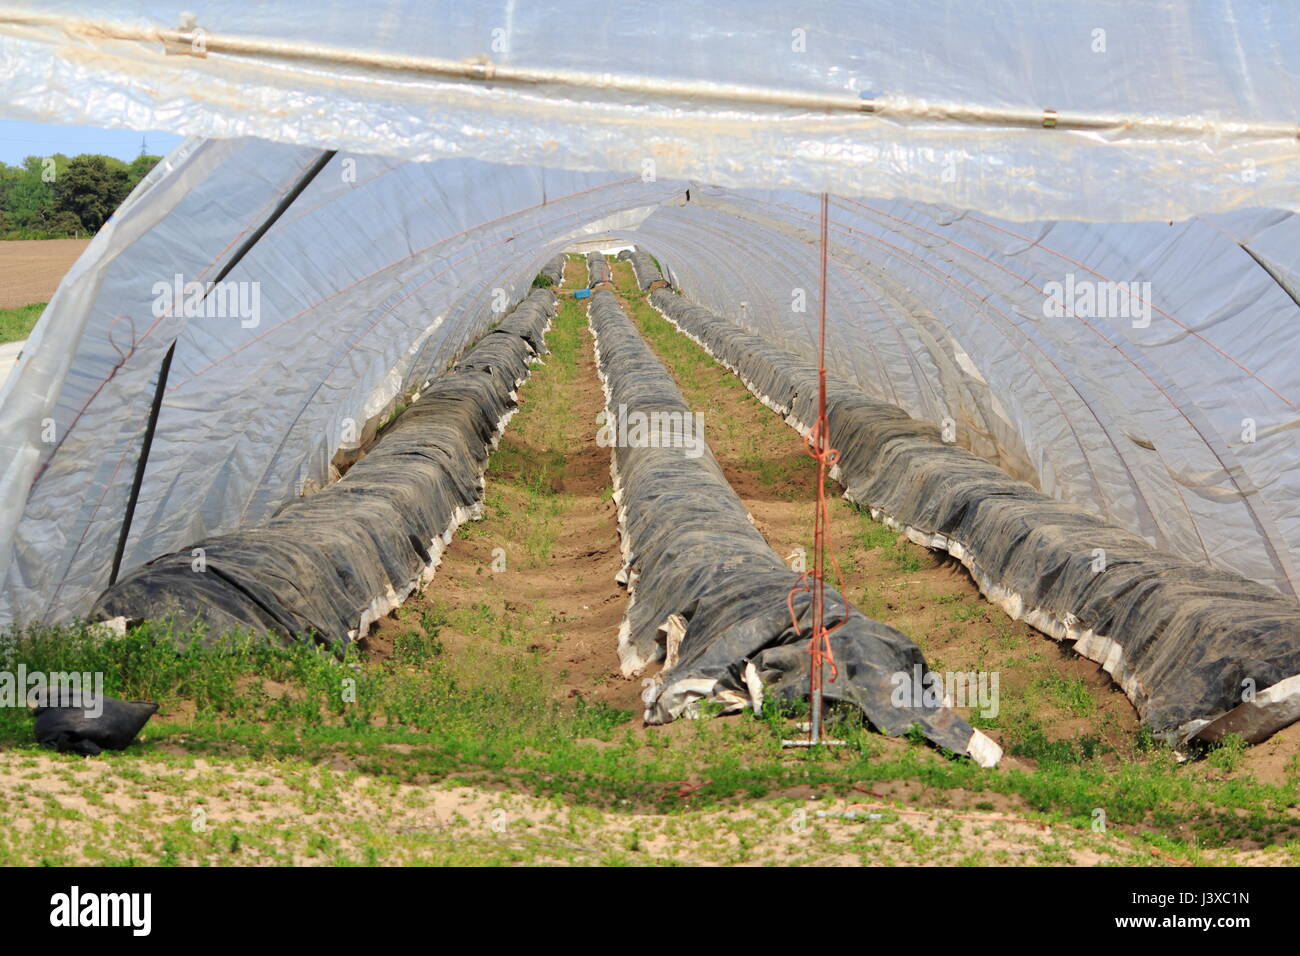 Spargel Anbau unter der Folie, im Zelt Stock Photo